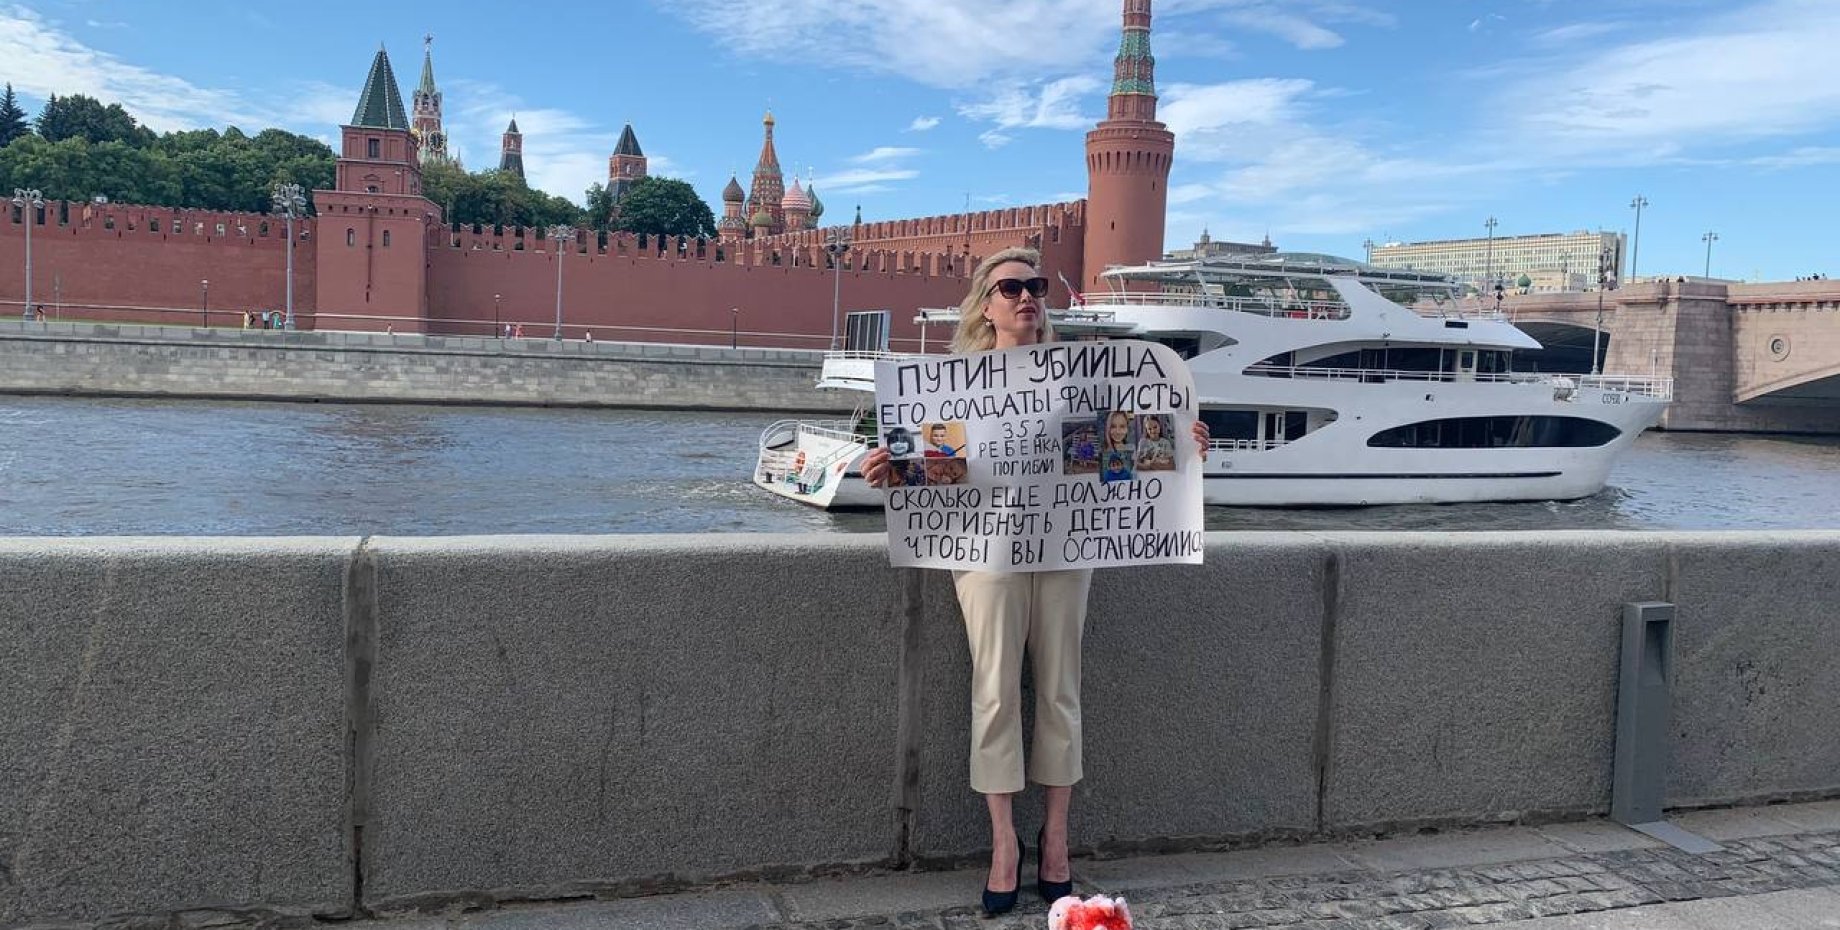 Март обвинил. Овсянникова с плакатом на набережной Москвы. Фотосессия возле Кремля. Софийская набережная.